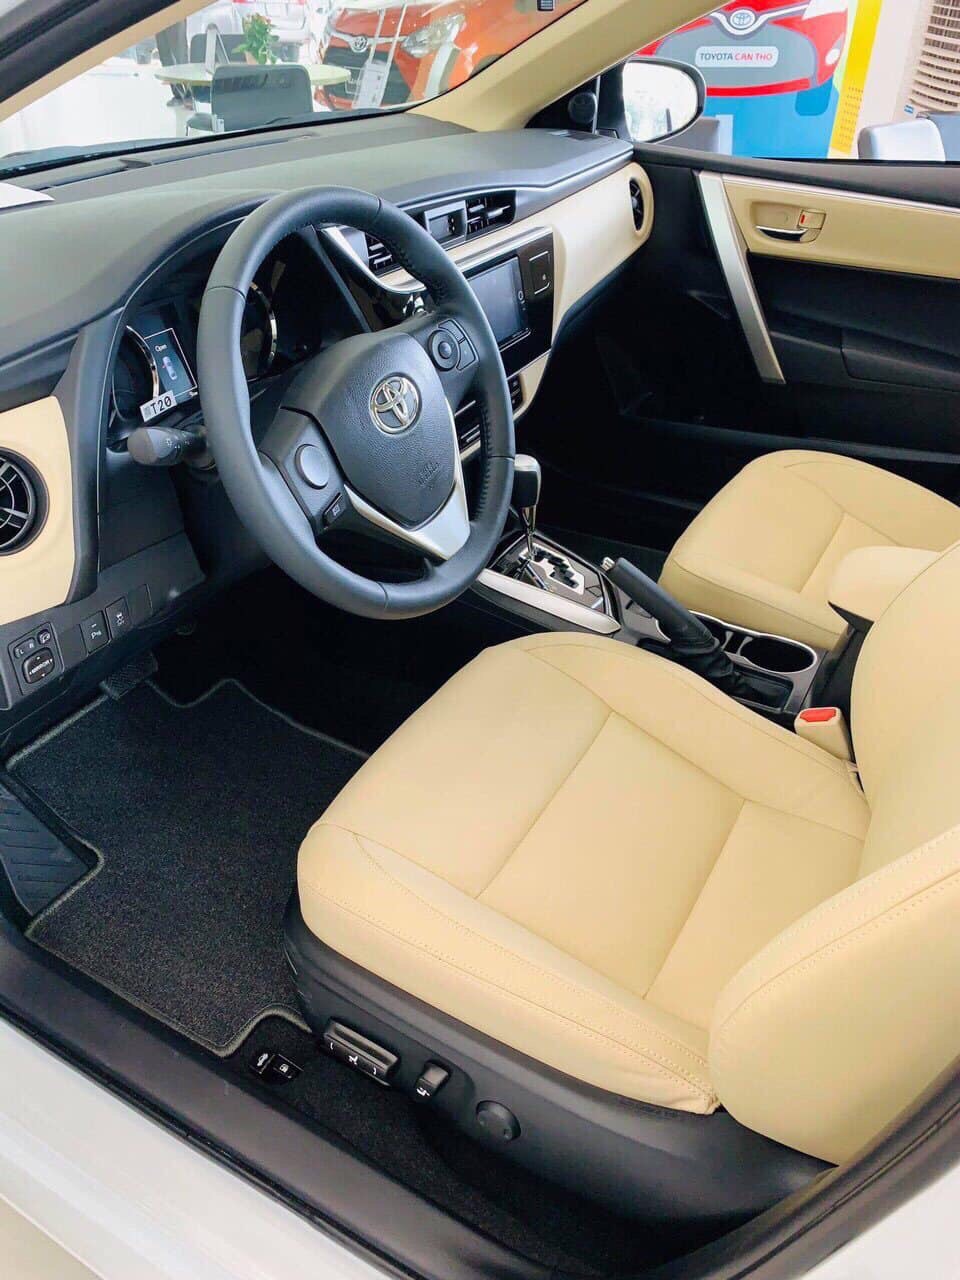 Toyota Corolla altis 1.8G CVT 2019 - Corolla Altis 1.8G CVT giá cực tốt, liên hệ ngay 0907044926 để được hỗ trợ tốt nhất